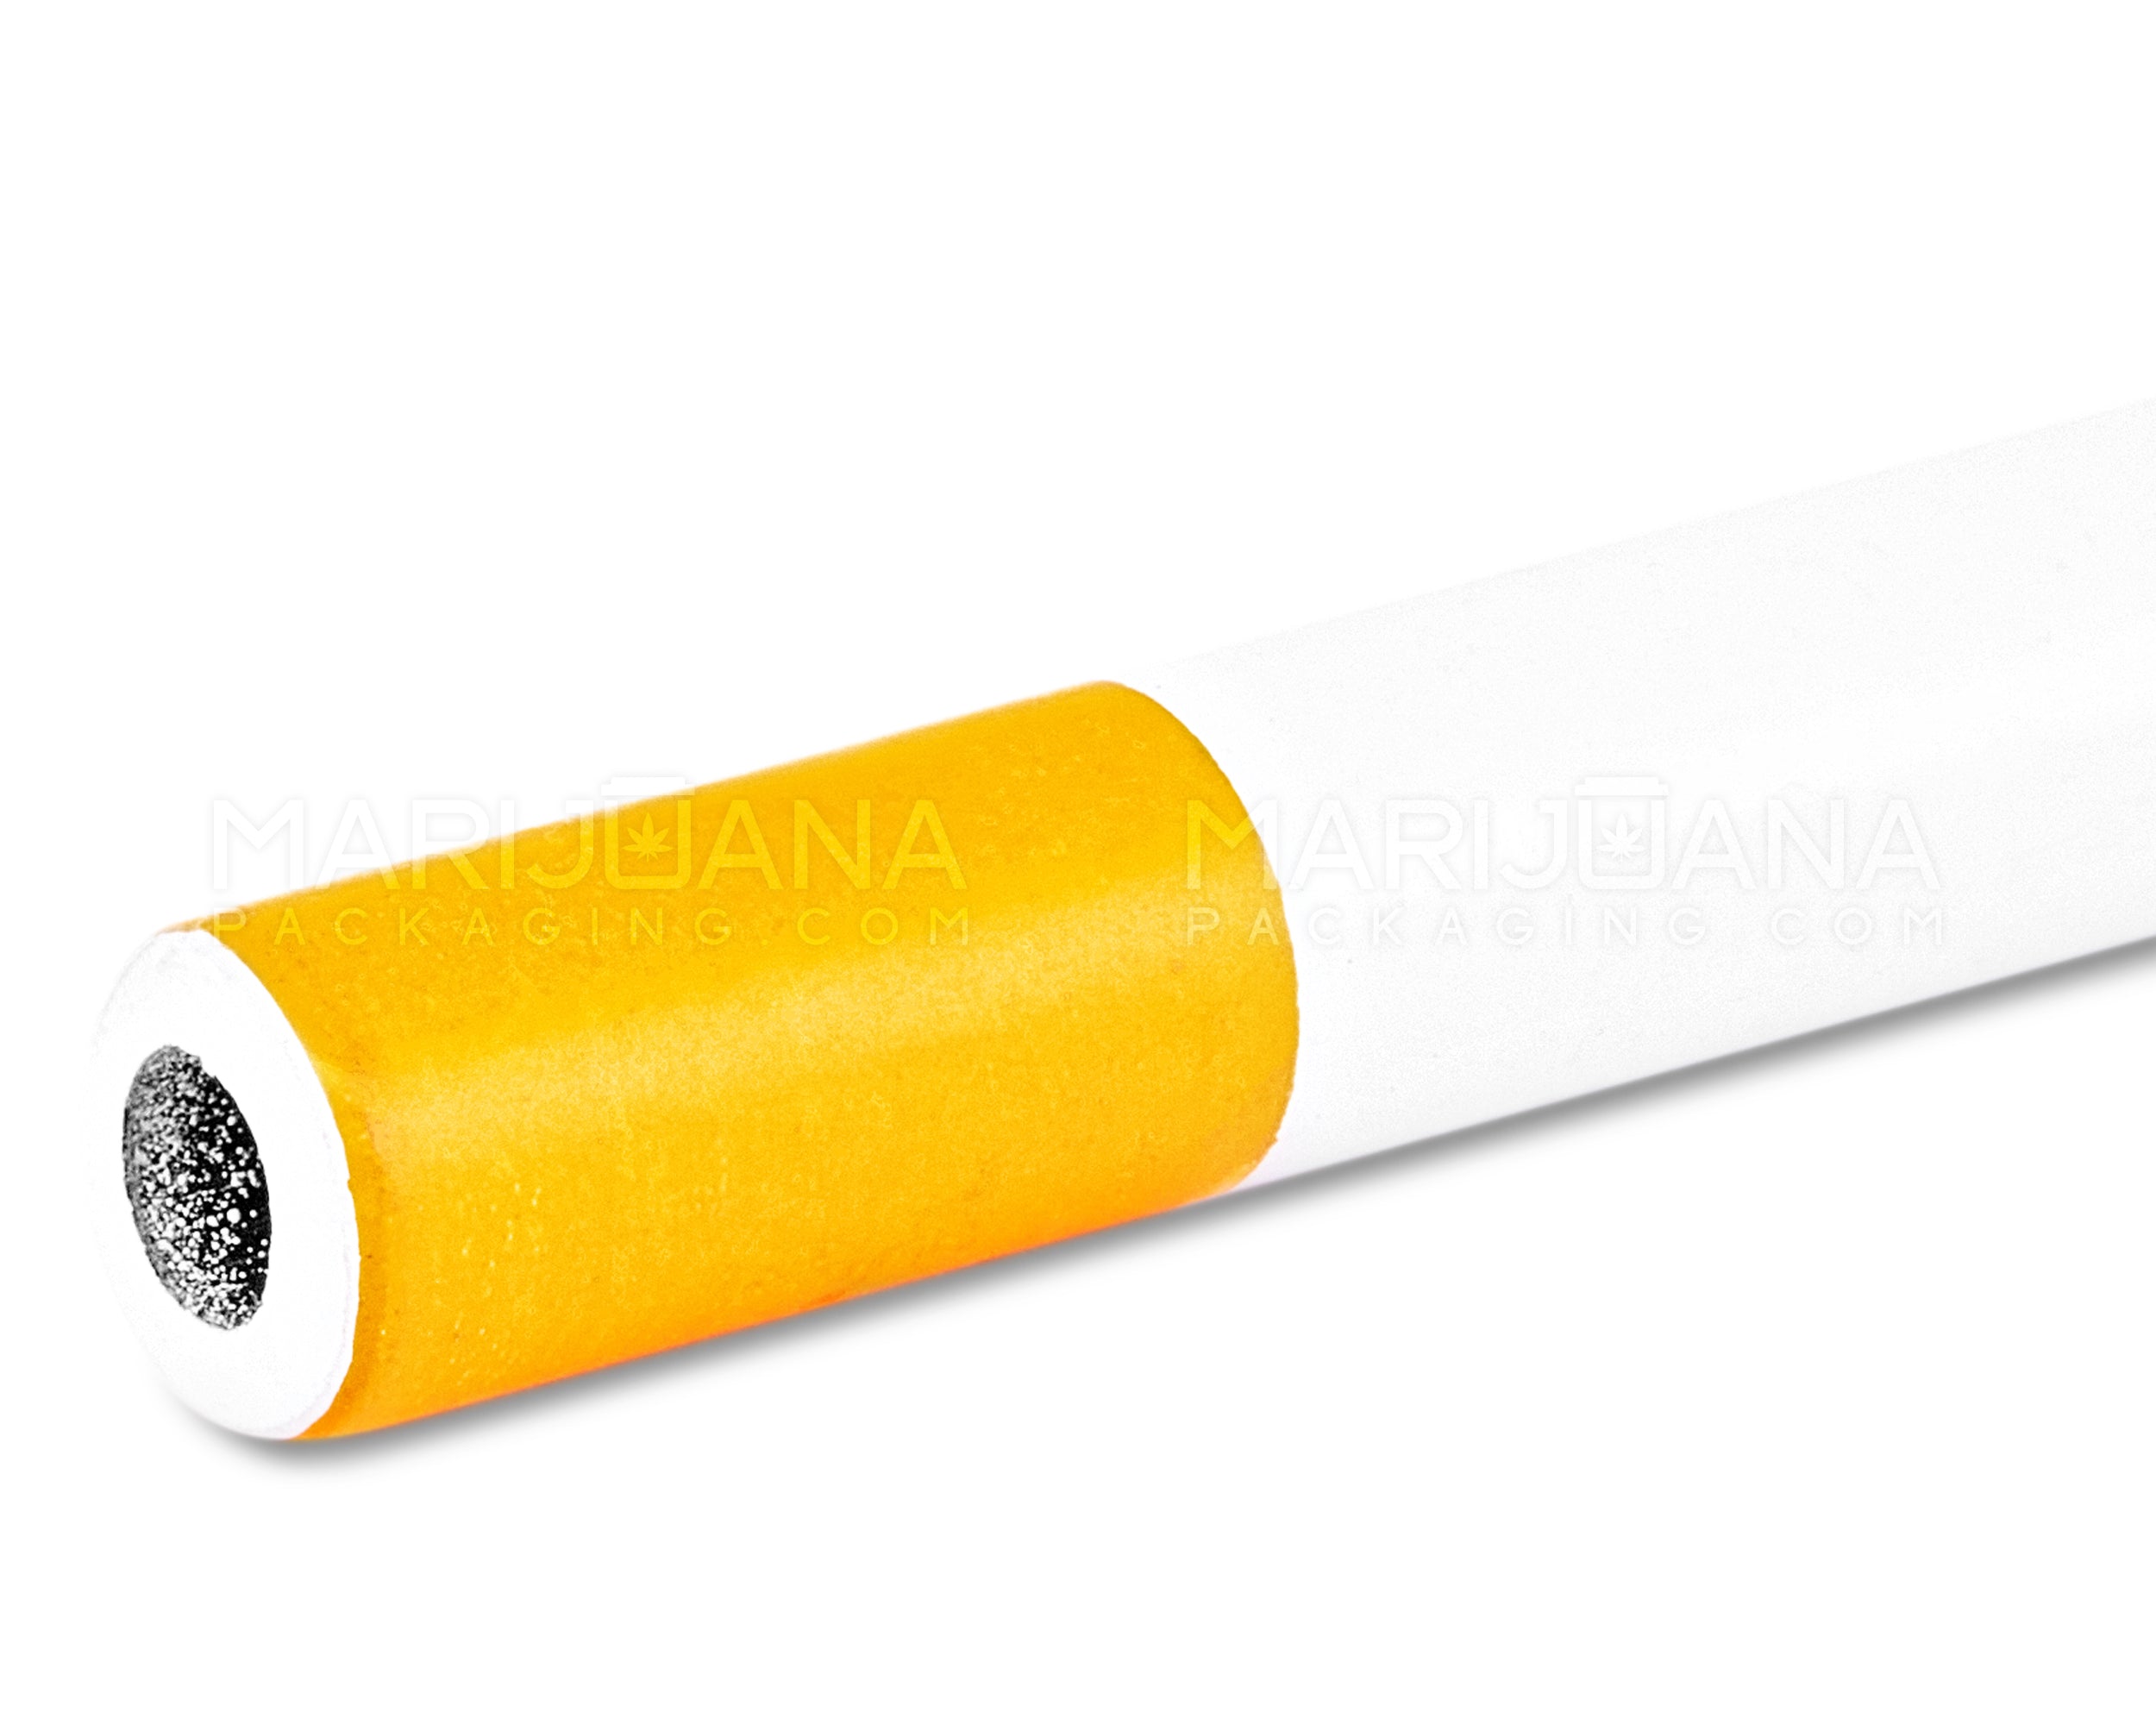 Cigarette Chillum Hand Pipe | 3in Long - Metal - Orange & White - 6